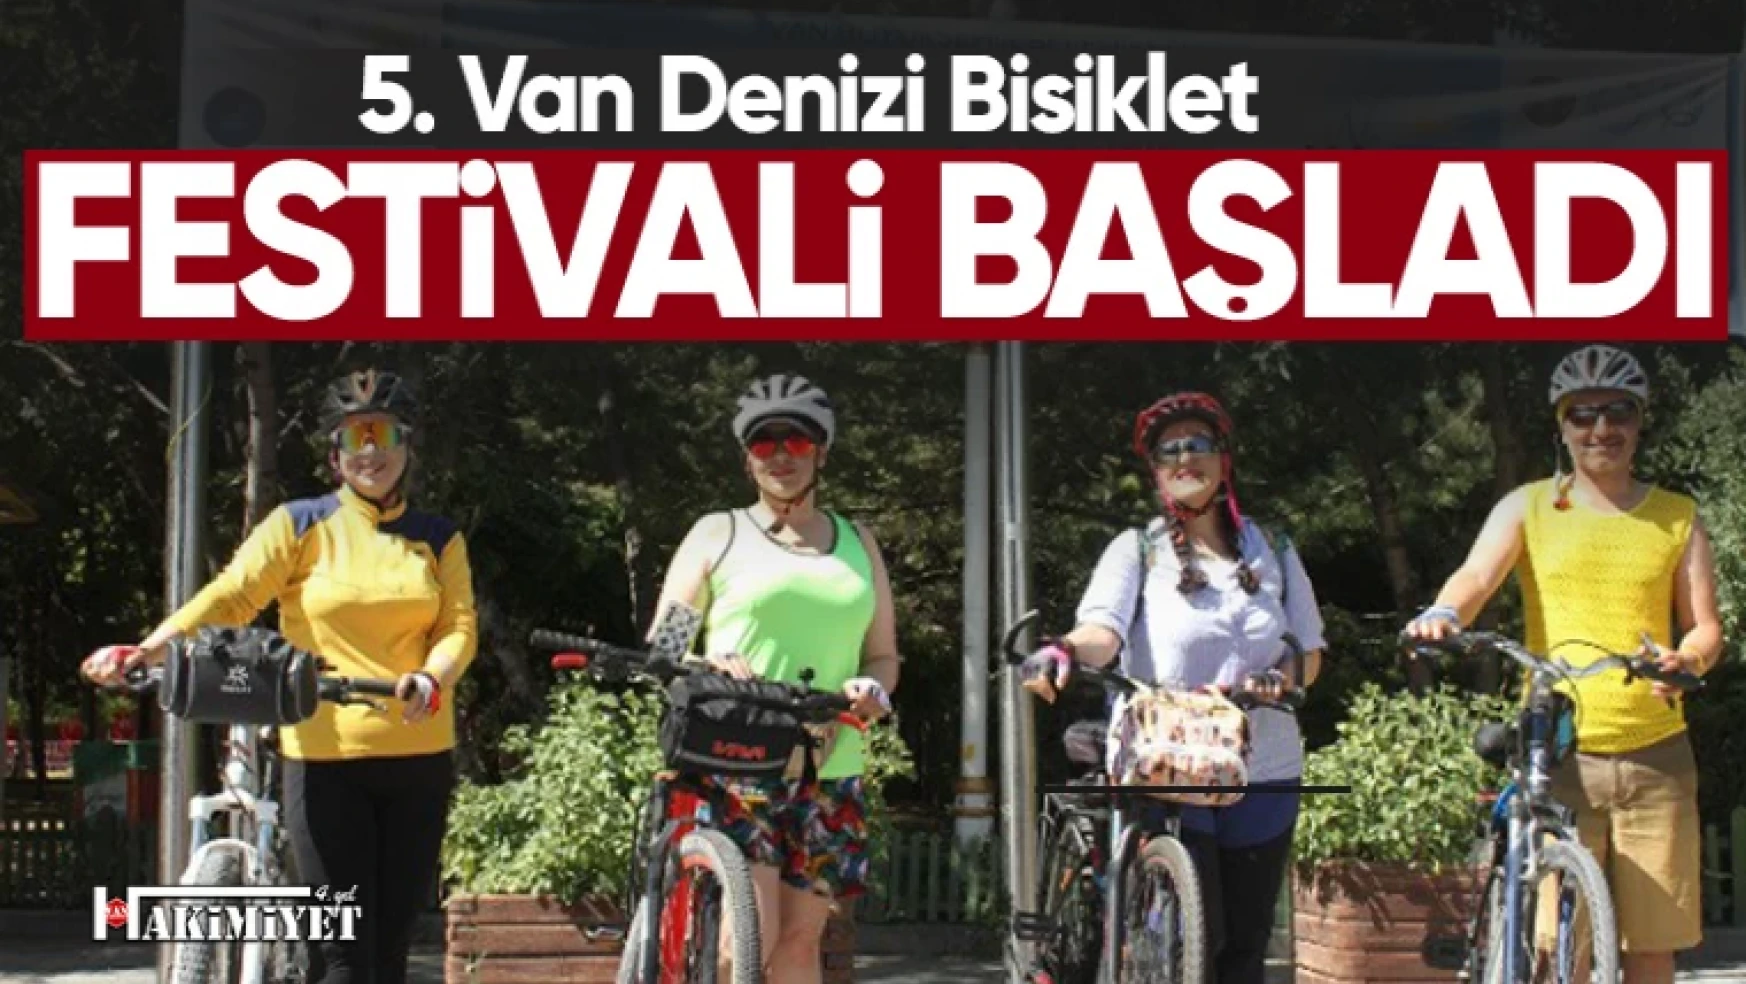 5. Van Denizi Bisiklet Festivali yoğun katılımla başladı